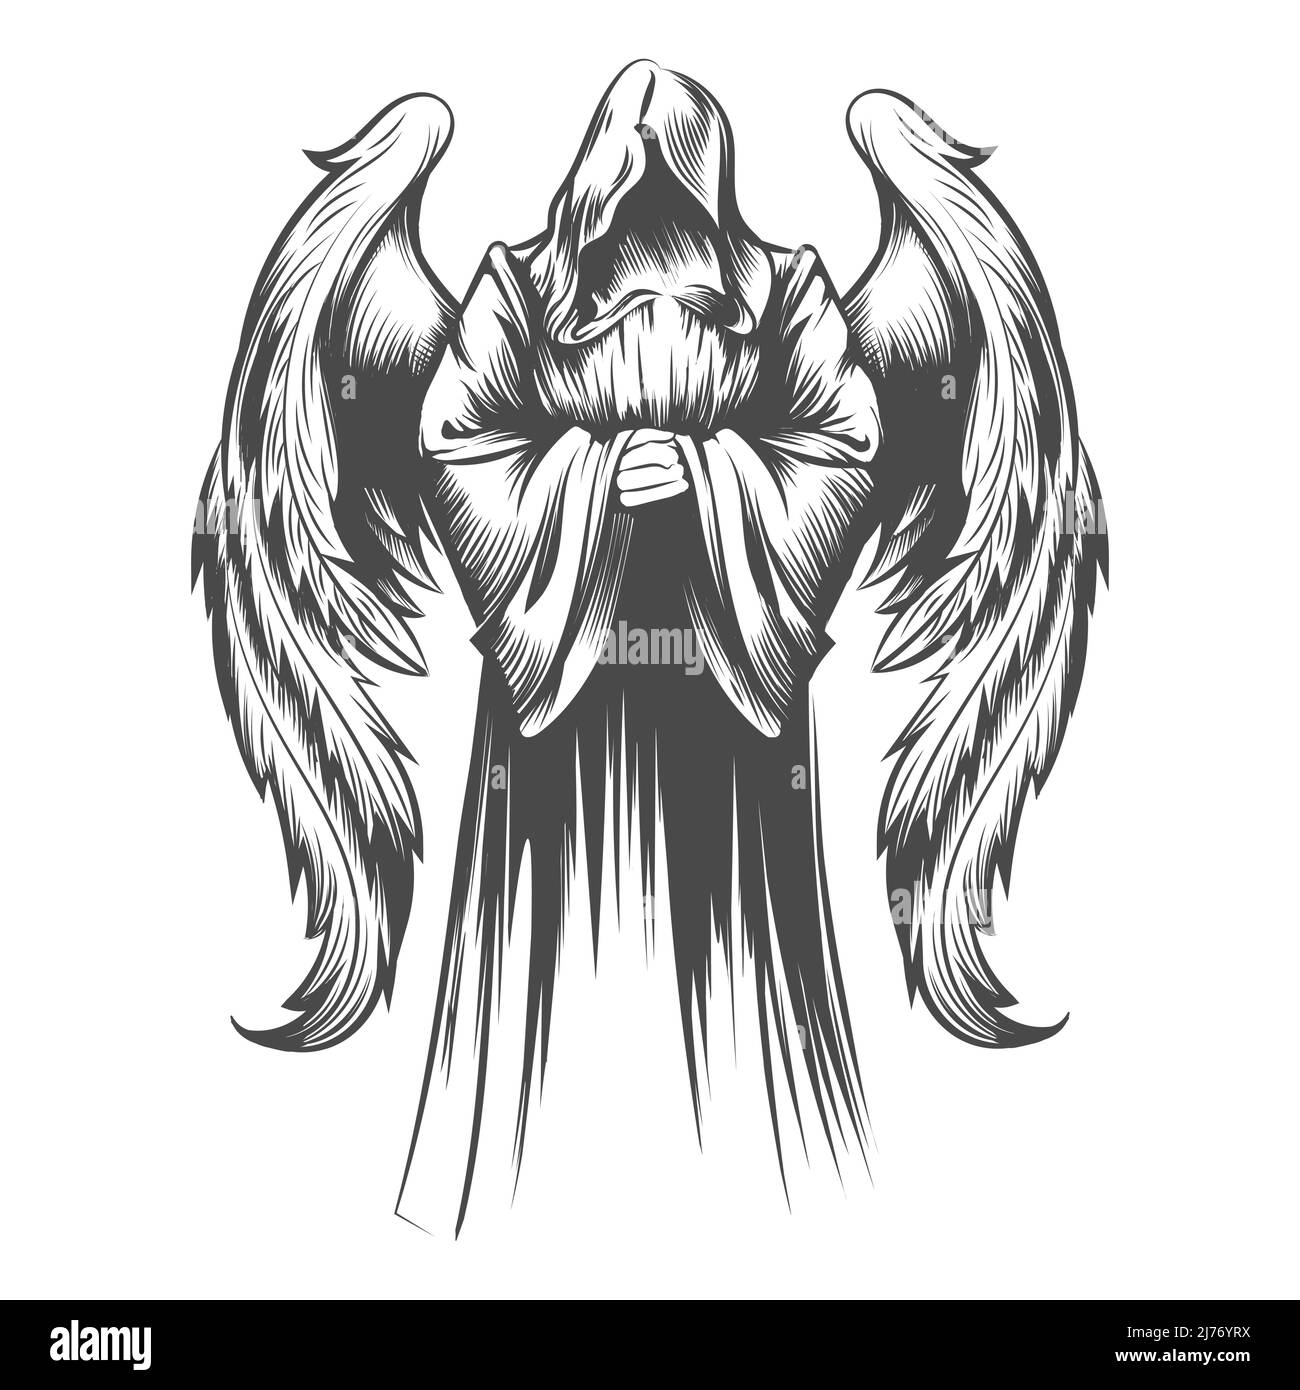 Tatouage d'Ange avec ailes dessinées en style gravure isolé sur fond blanc. Illustration vectorielle. Illustration de Vecteur